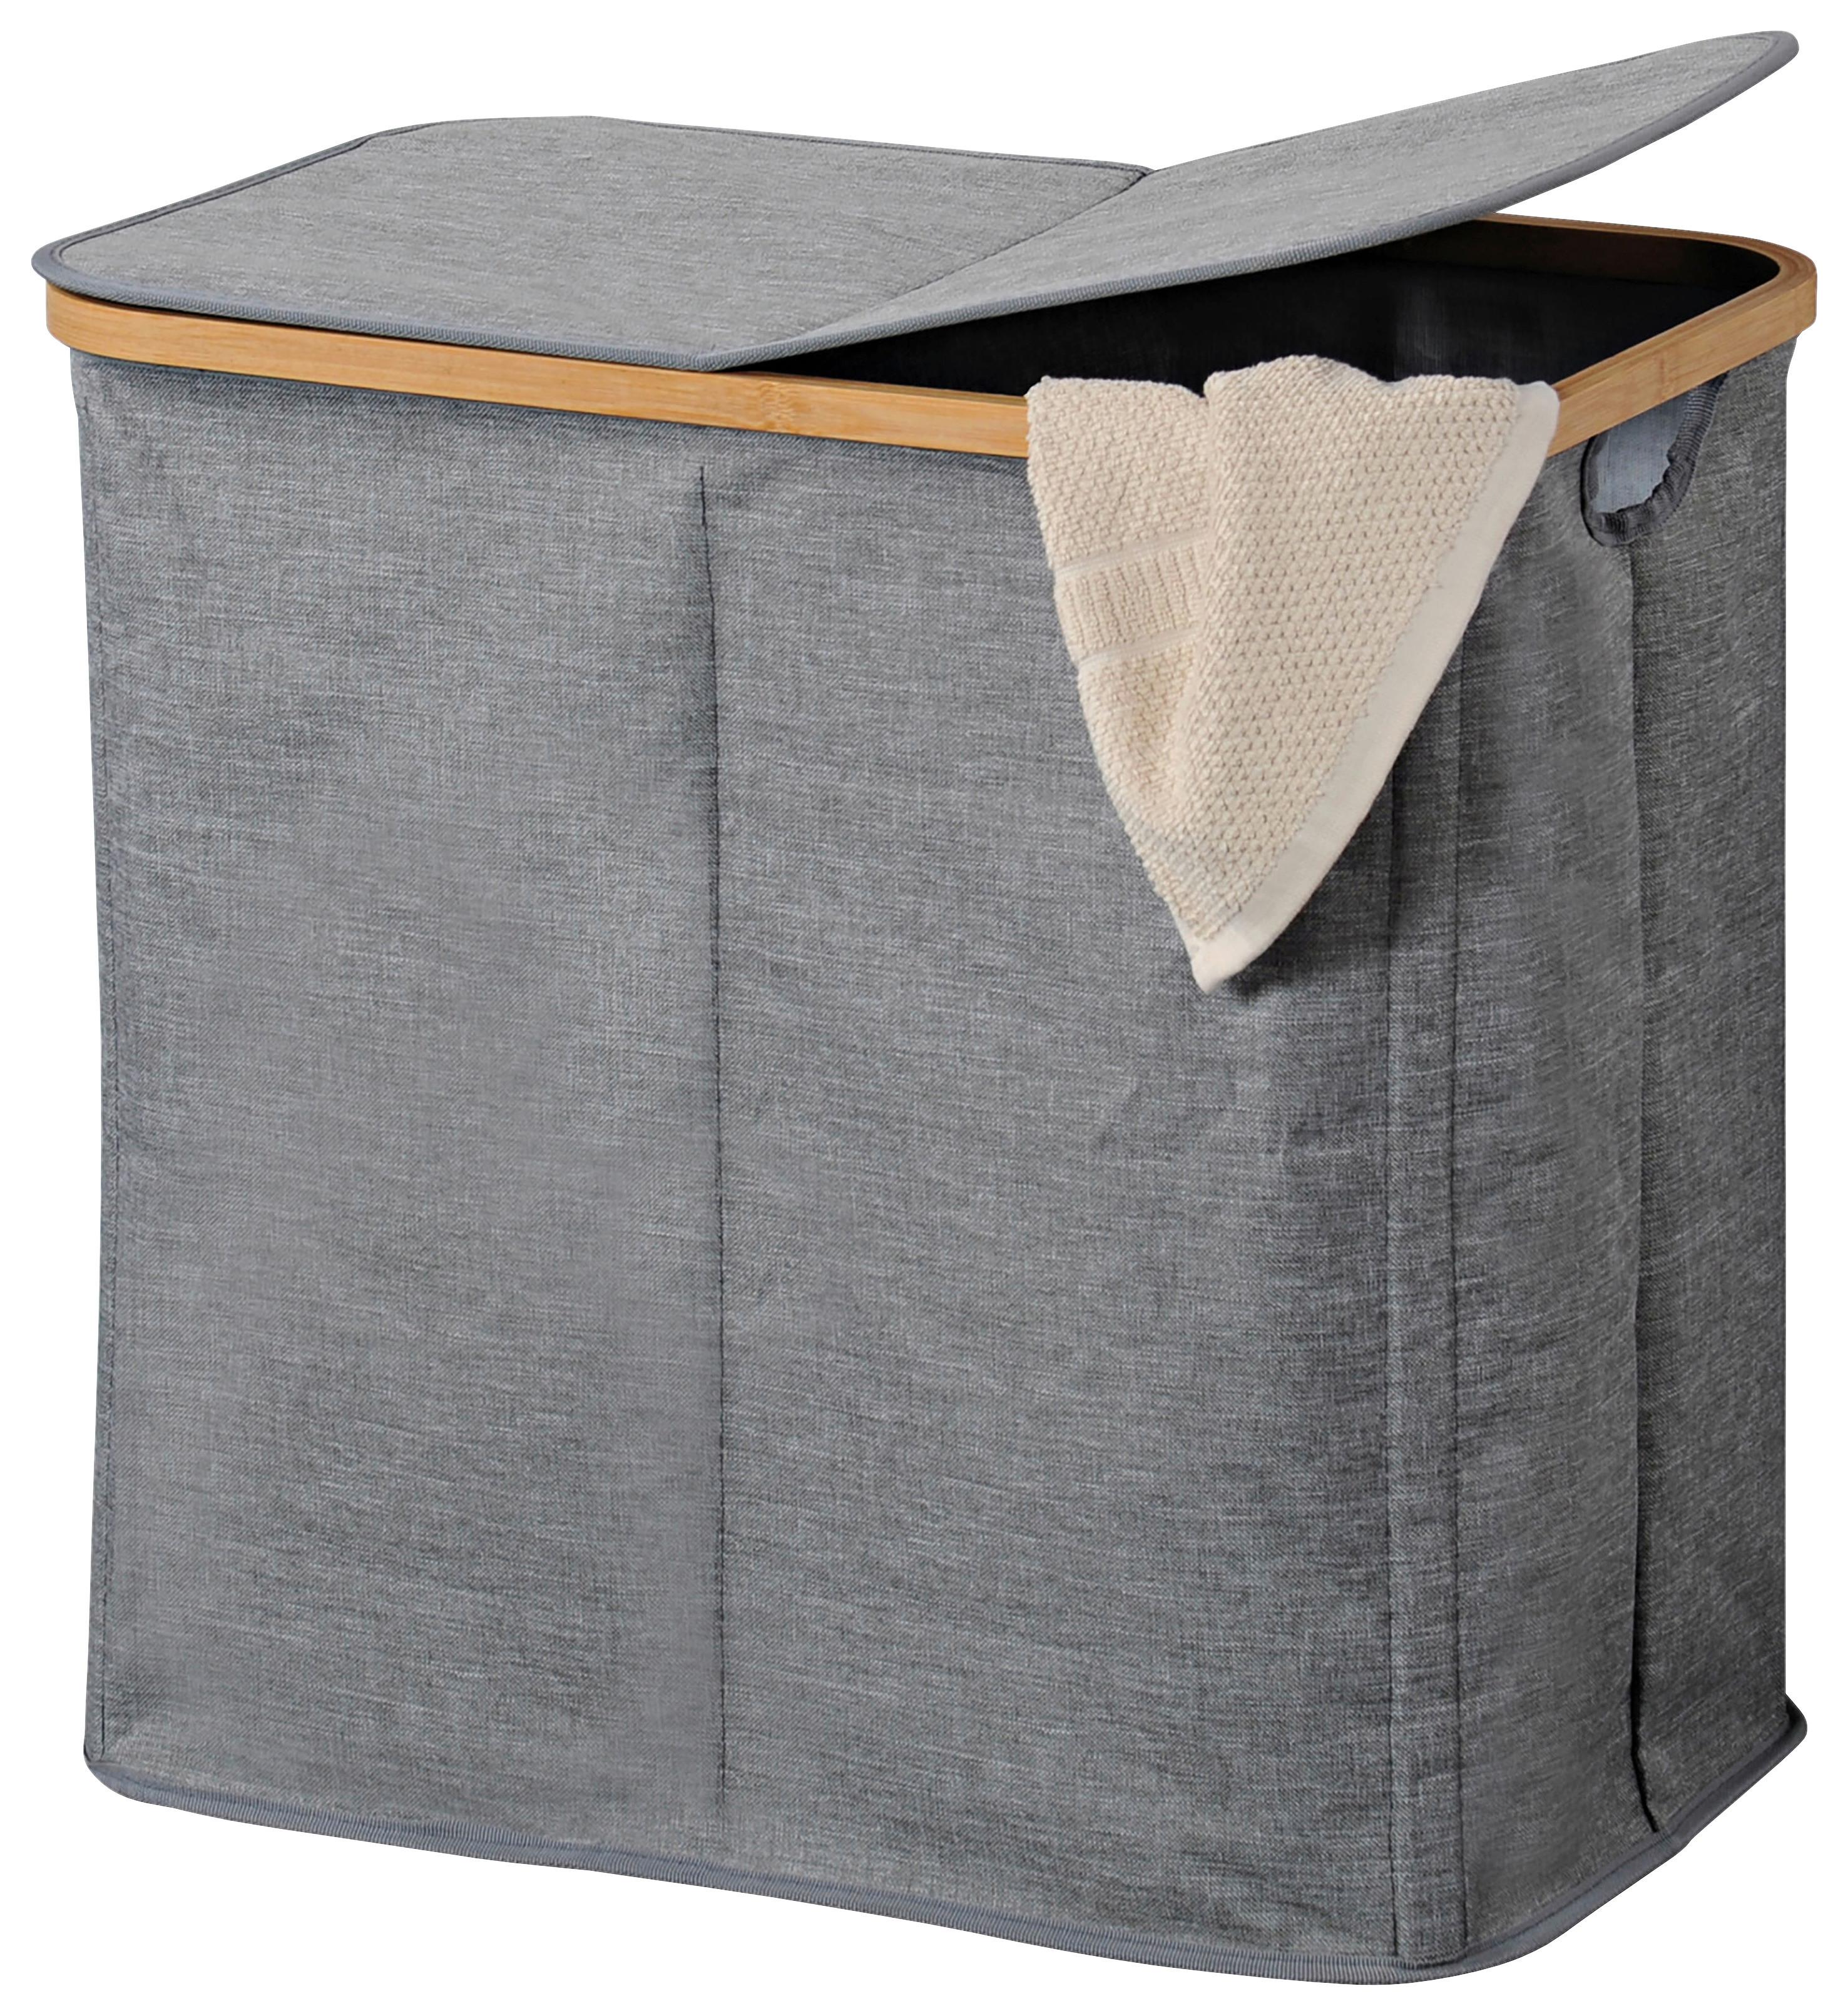 Wäschesack mit Deckel 2 Fächer Grau, 55x50x33 cm - Grau, MODERN, Holz/Kunststoff (54,50/50/33cm) - Kesper